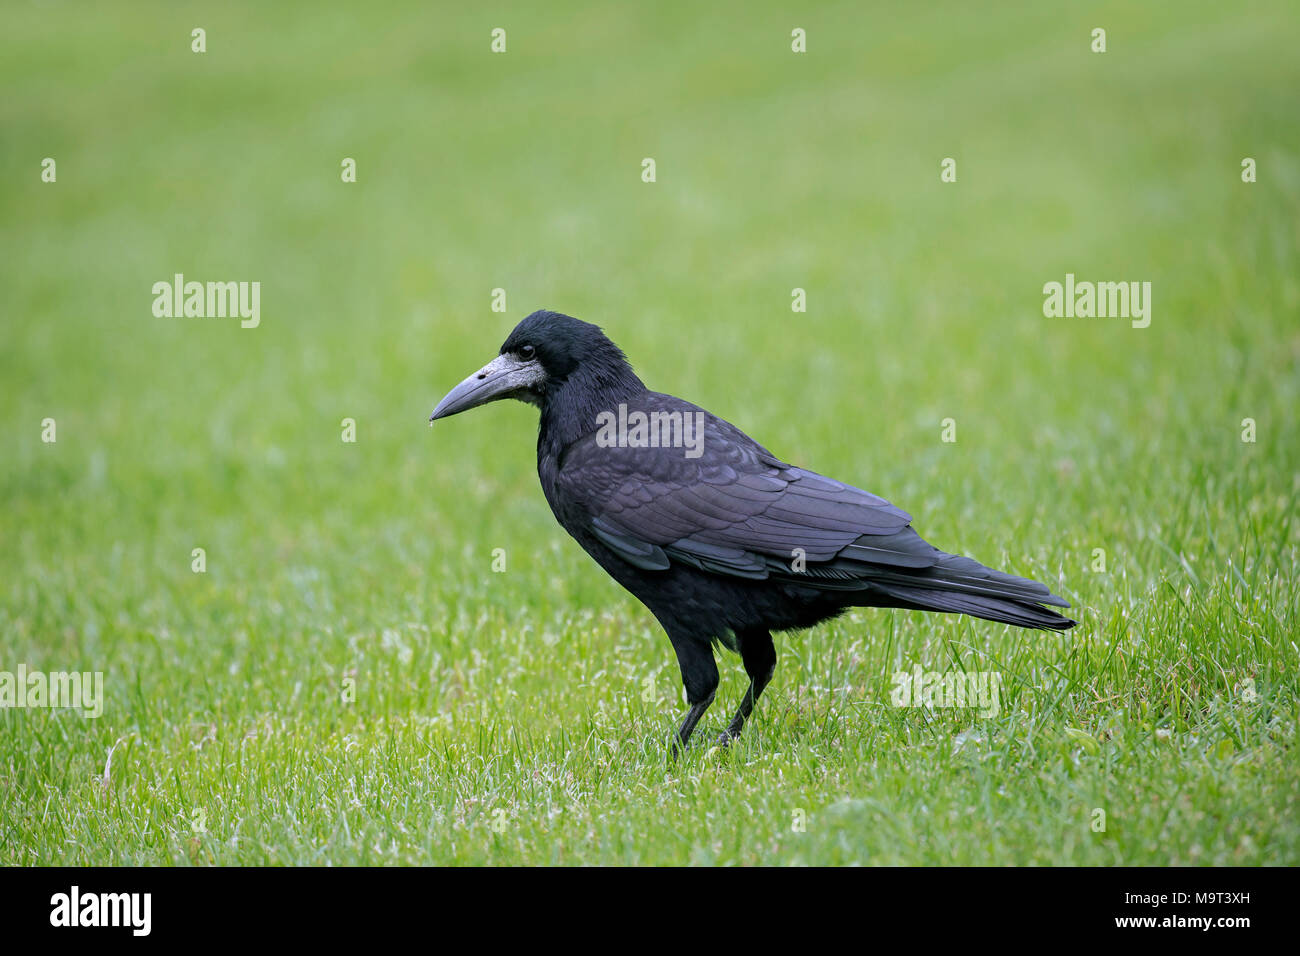 Corbeau freux (corvus frugilegus) se nourrissent dans les herbages / jardin pelouse Banque D'Images